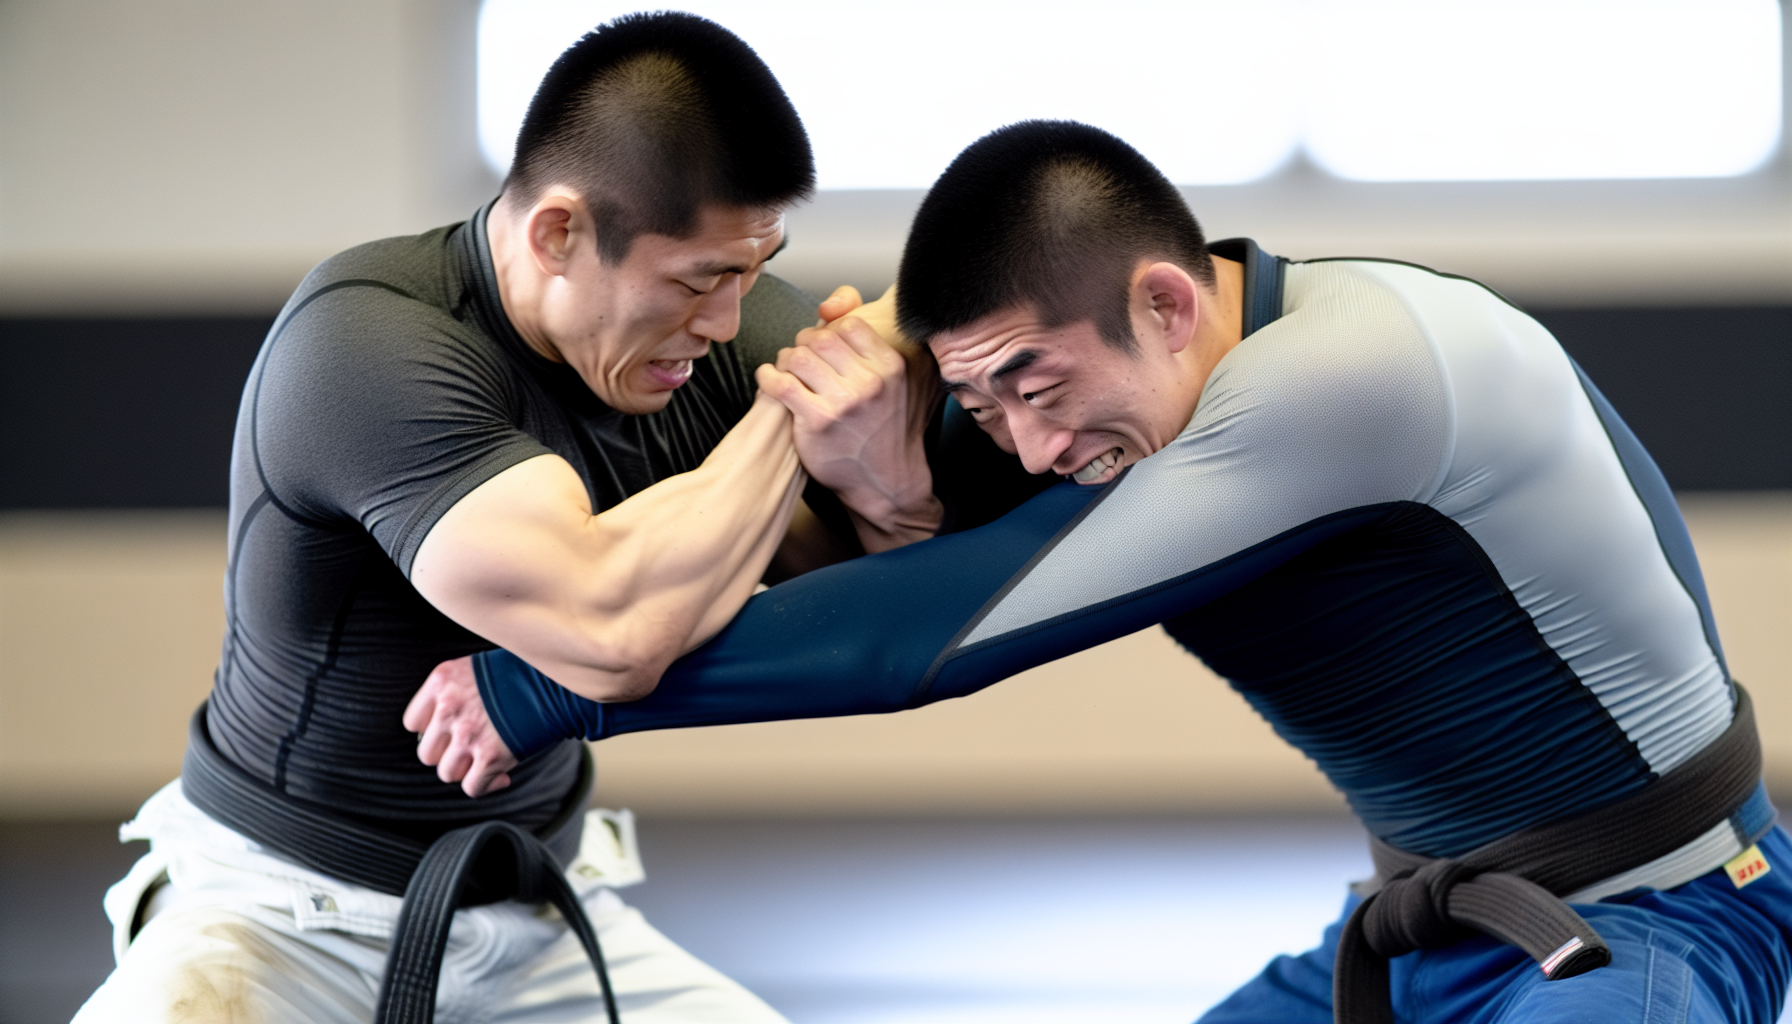 Two jiu-jitsu male practioners battling in no-gi